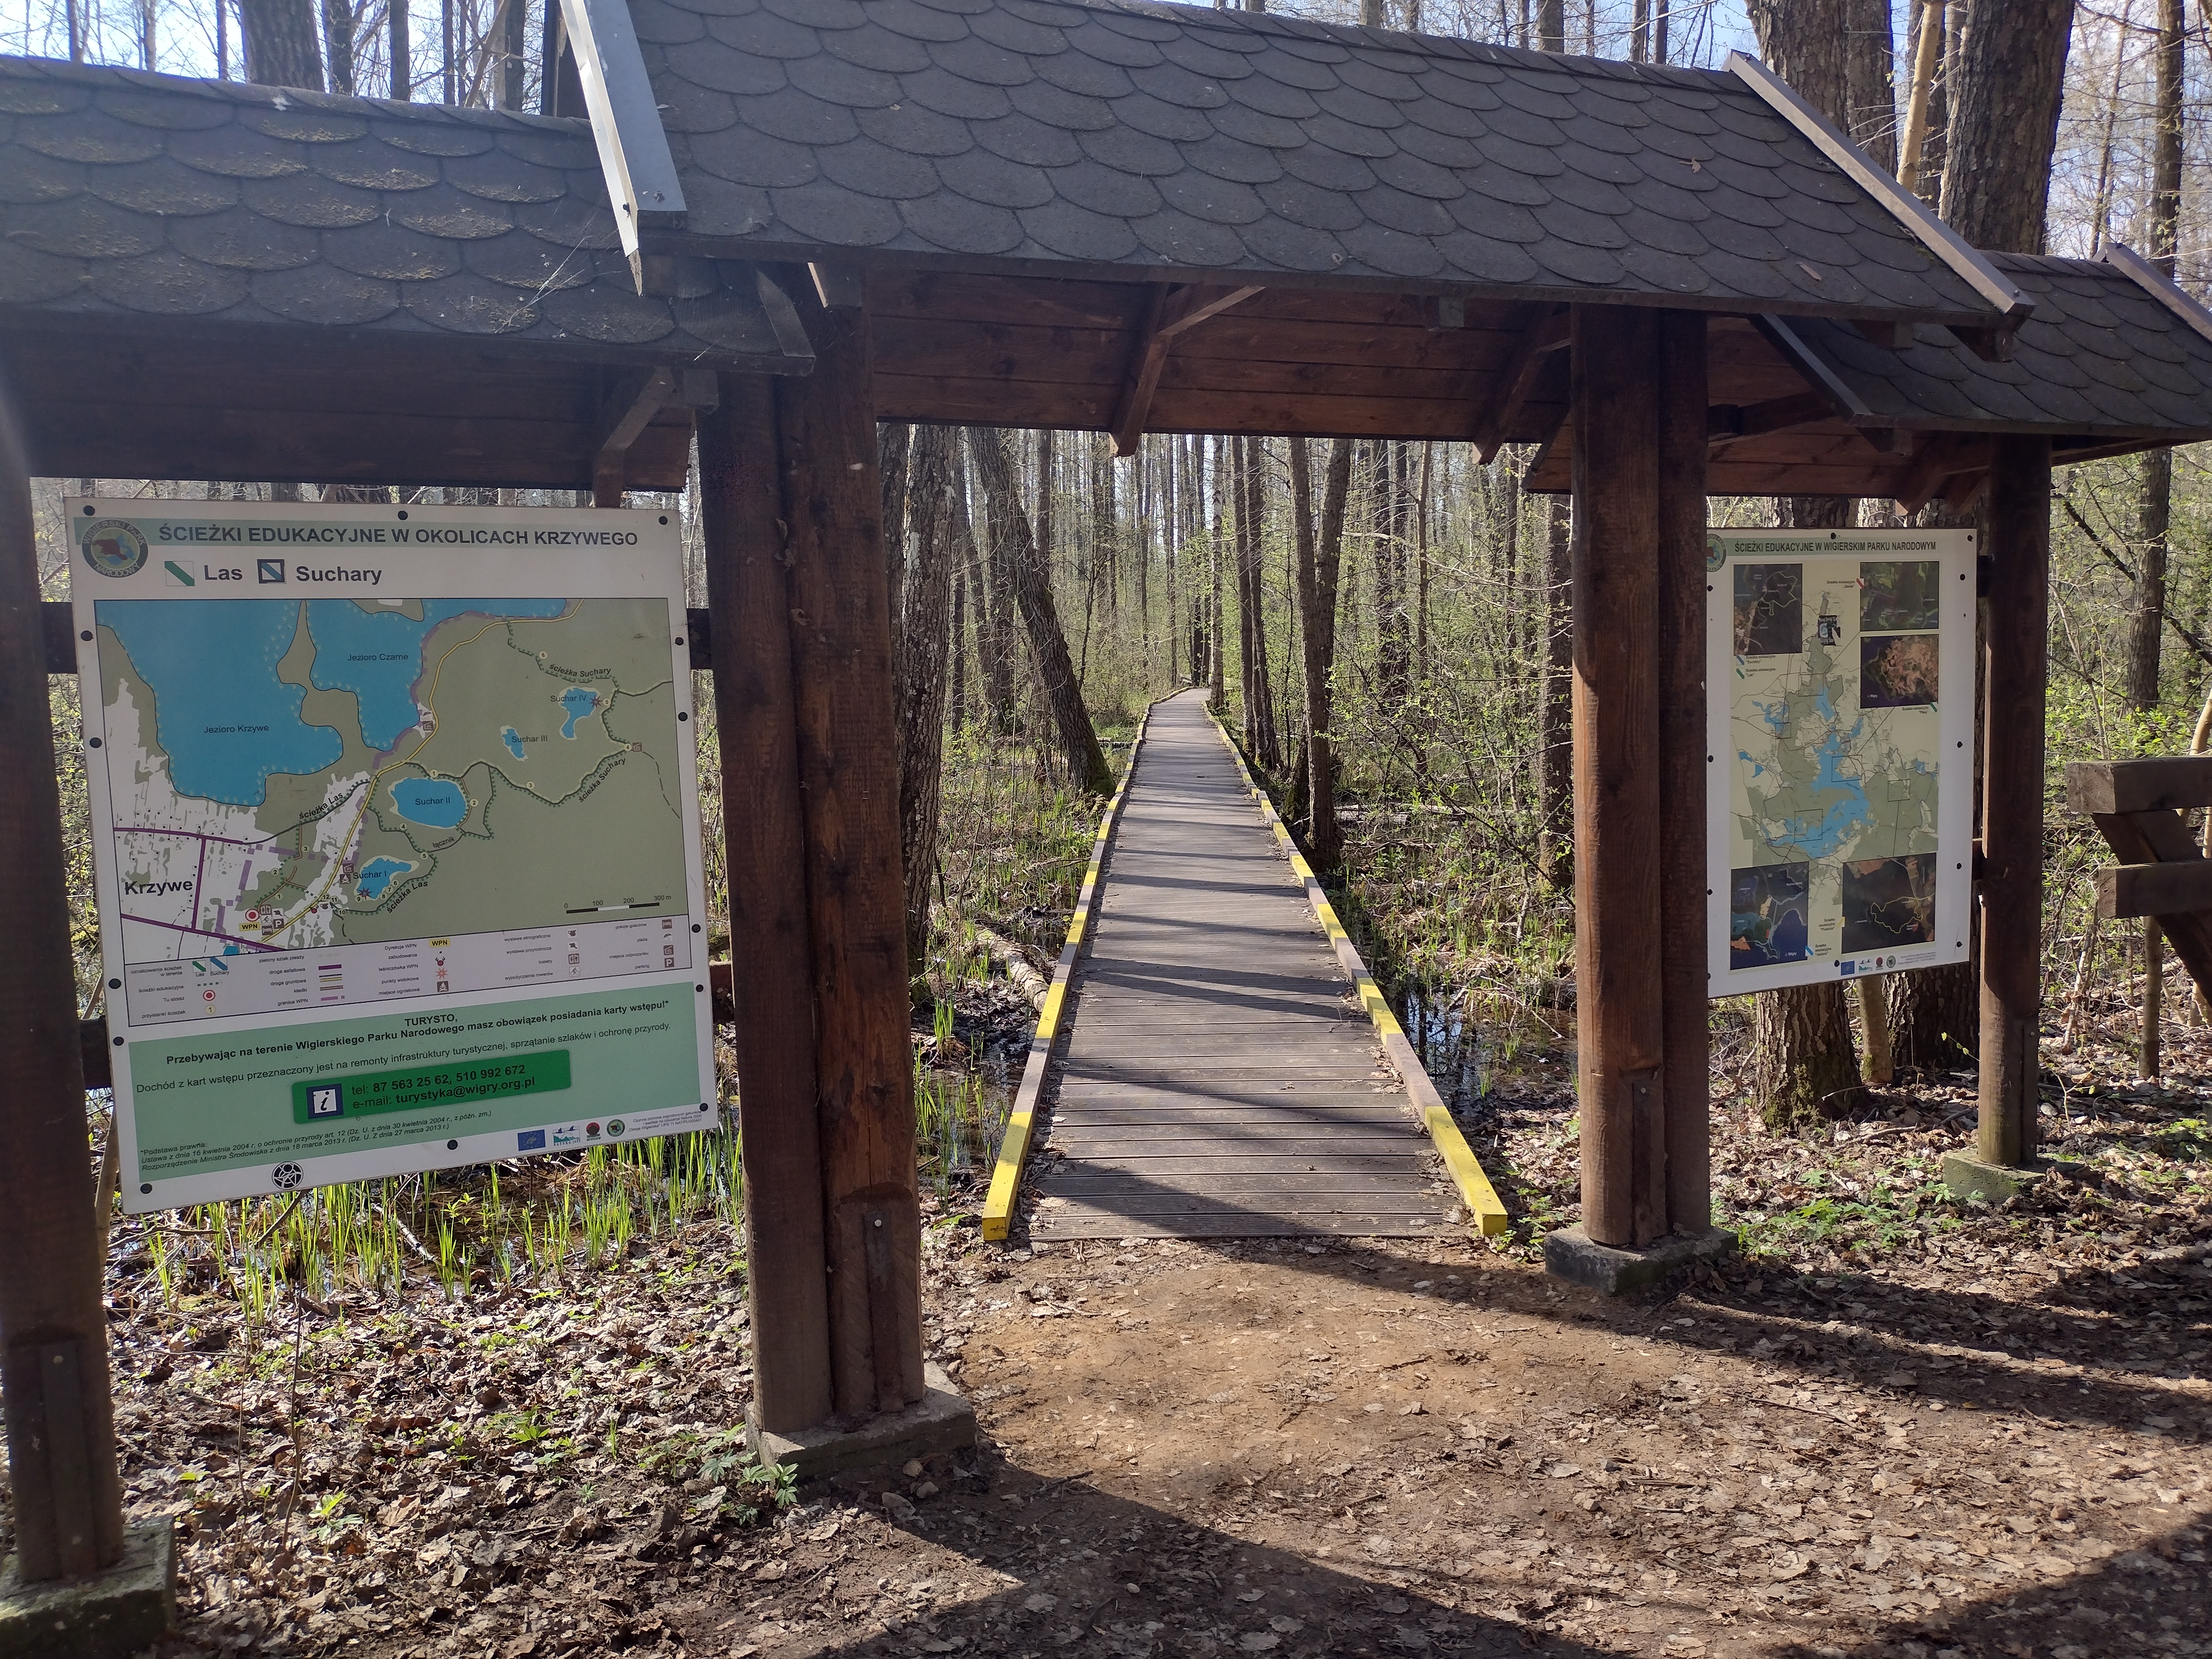 Wejście na ścieżkę turystyczną wiodącą przez las. Drewniana brama wejściowa z tablicami informacyjnymi po dwóch stronach. Na tablicach widoczne są mapy. Mapa z lewej strony prezentuje okoliczne ścieżki, z prawej strony mapa całego parku. 